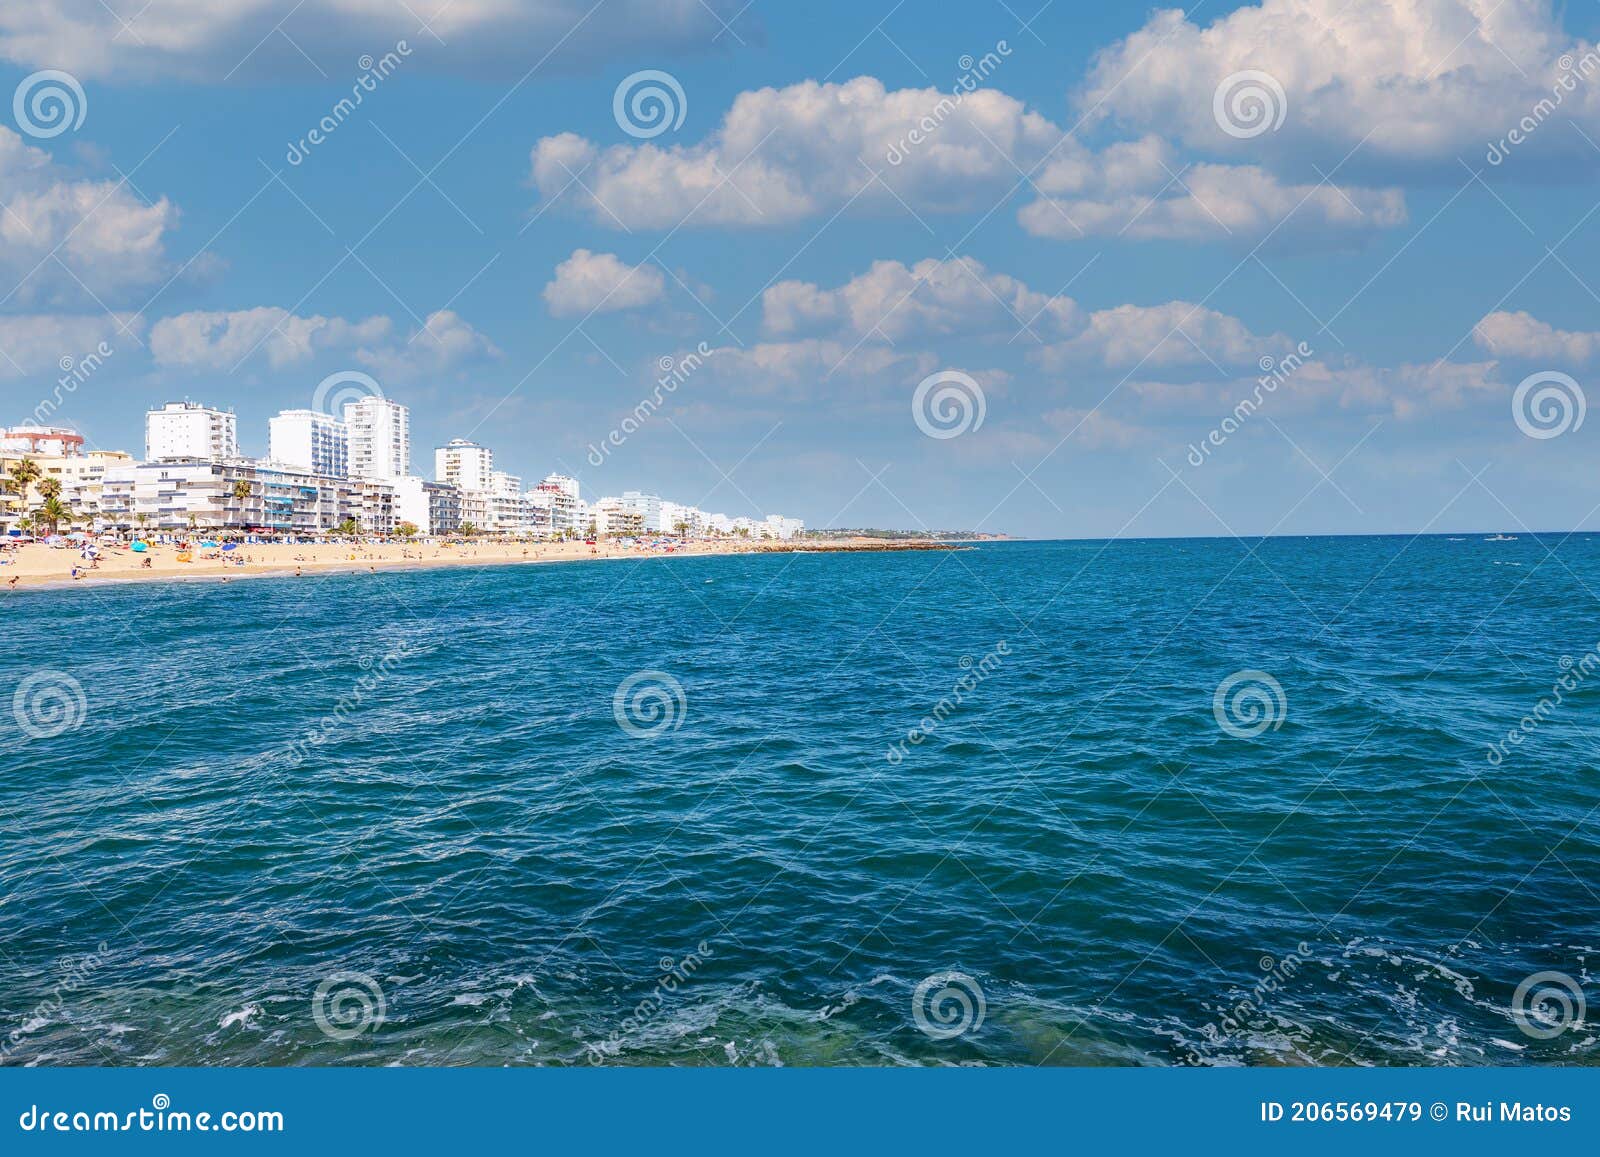 algarve wide view of quarteira beach